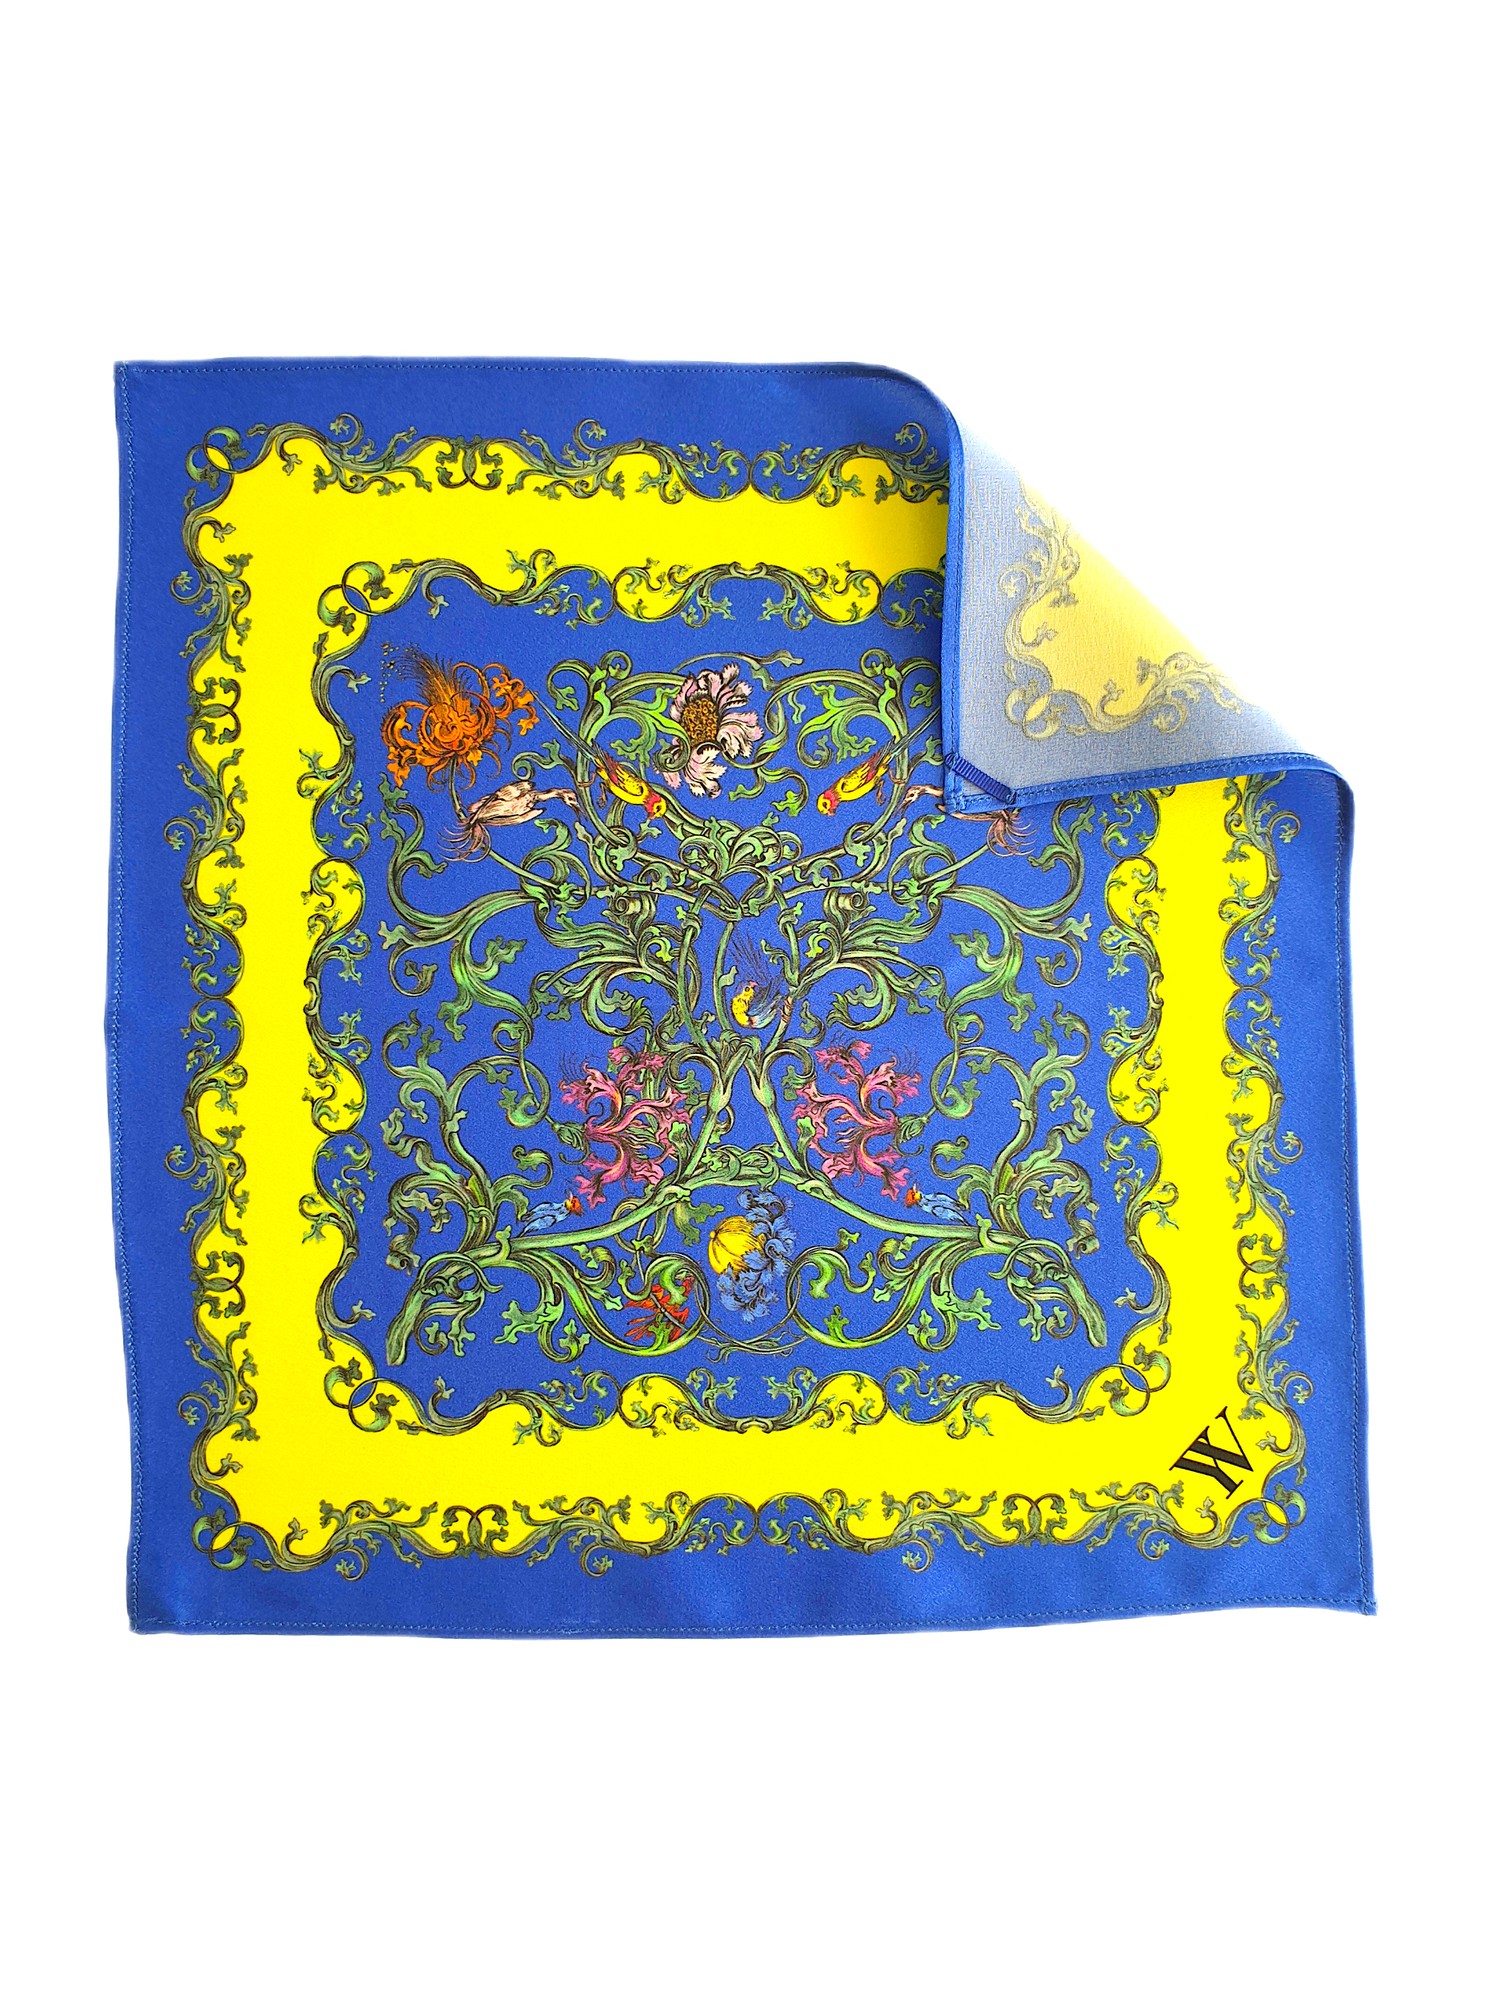 Silk scarf-transformer blue-yellow (28x28cm)